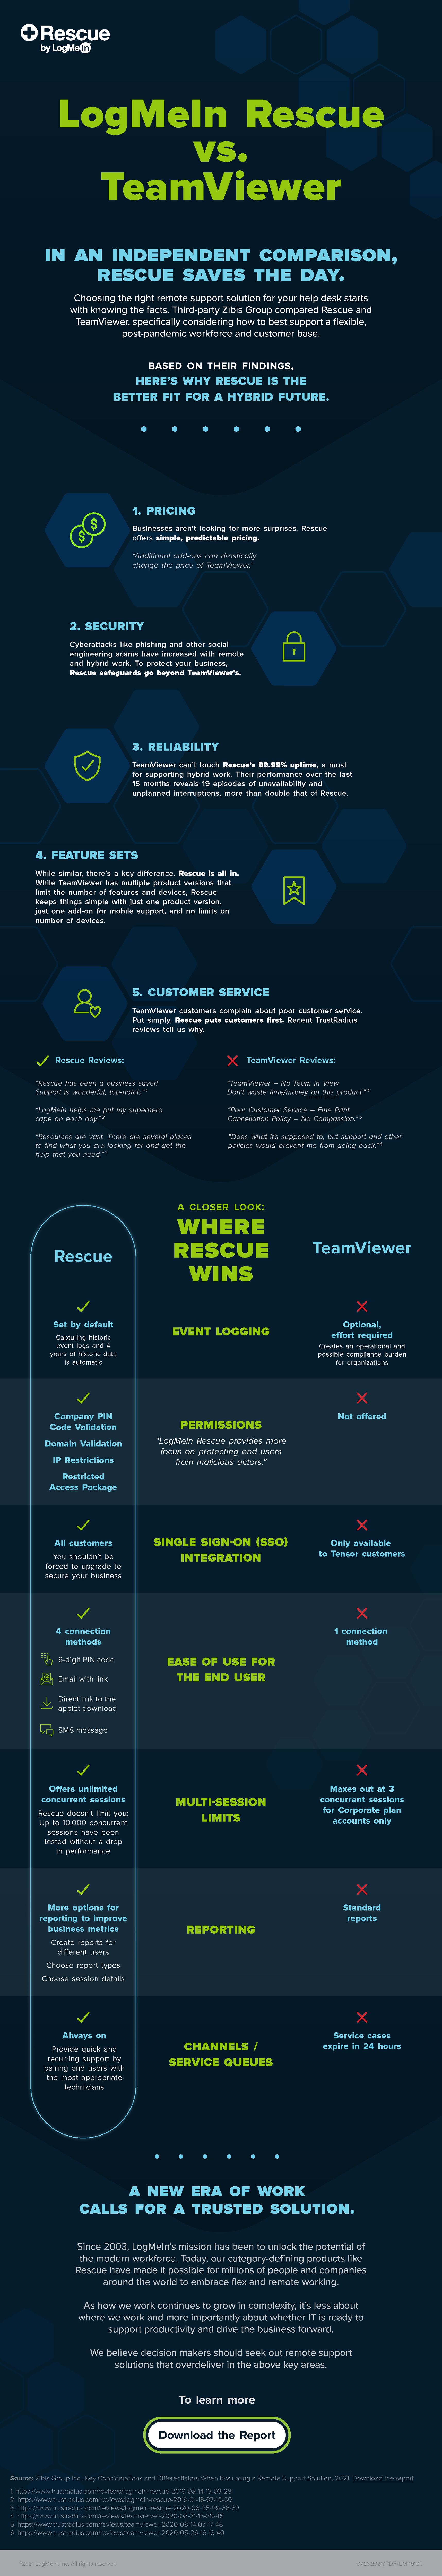 logmein teamviewer comparison